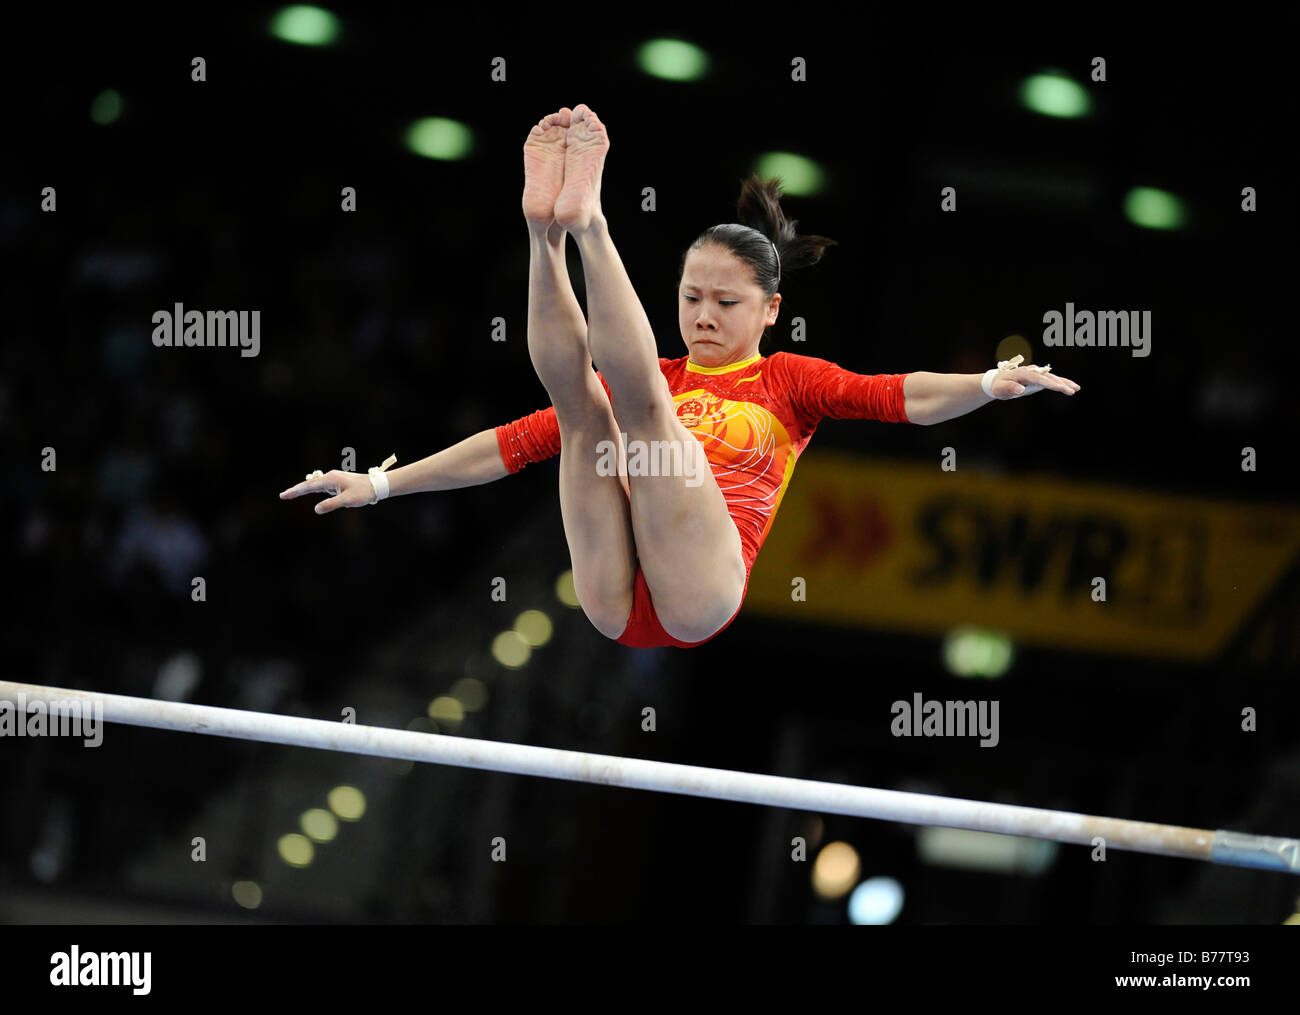 Fei Cheng, China, actuando sobre las barras asimétricas, la Copa del Mundo de gimnasia de 2008 en Stuttgart, Baden-Wurtemberg, Alemania, Europa Foto de stock